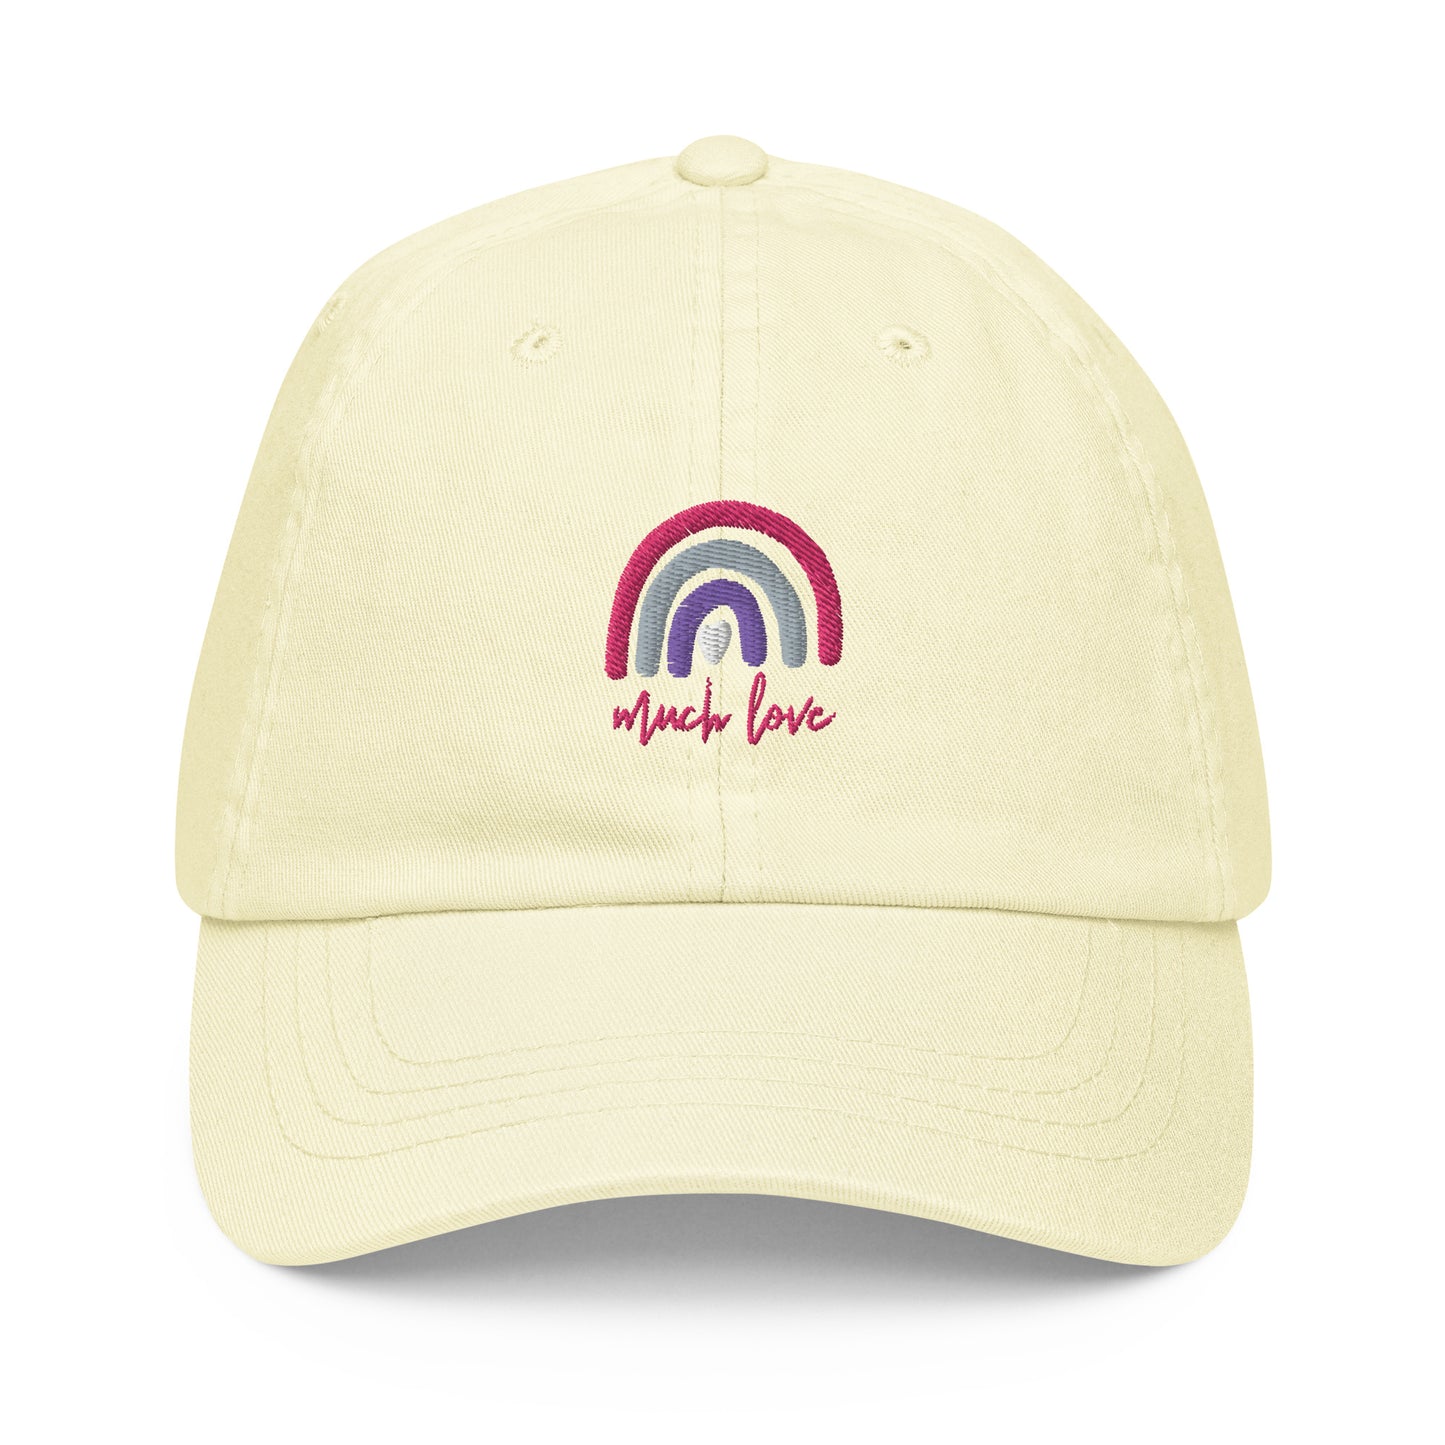 Much Love Pastel Hat